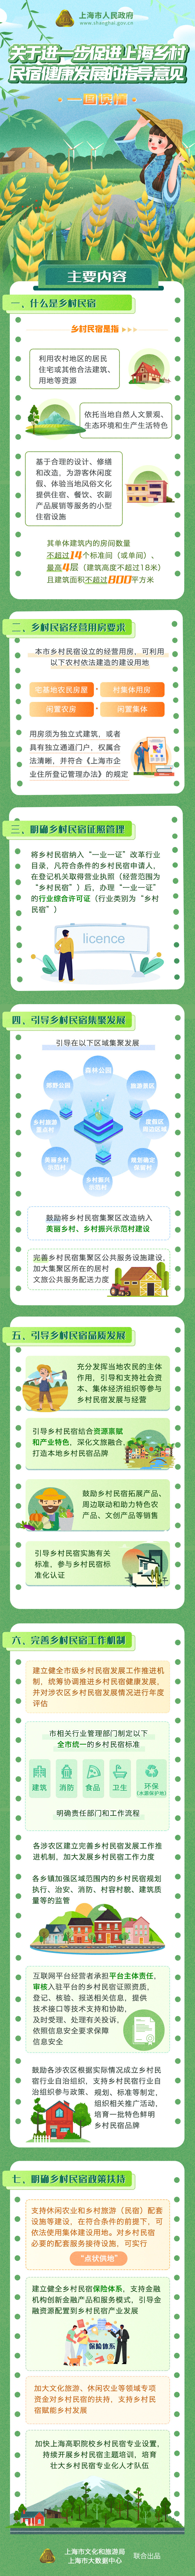 一图读懂《关于进一步促进上海乡村民宿健康发展的指导意见》.jpg